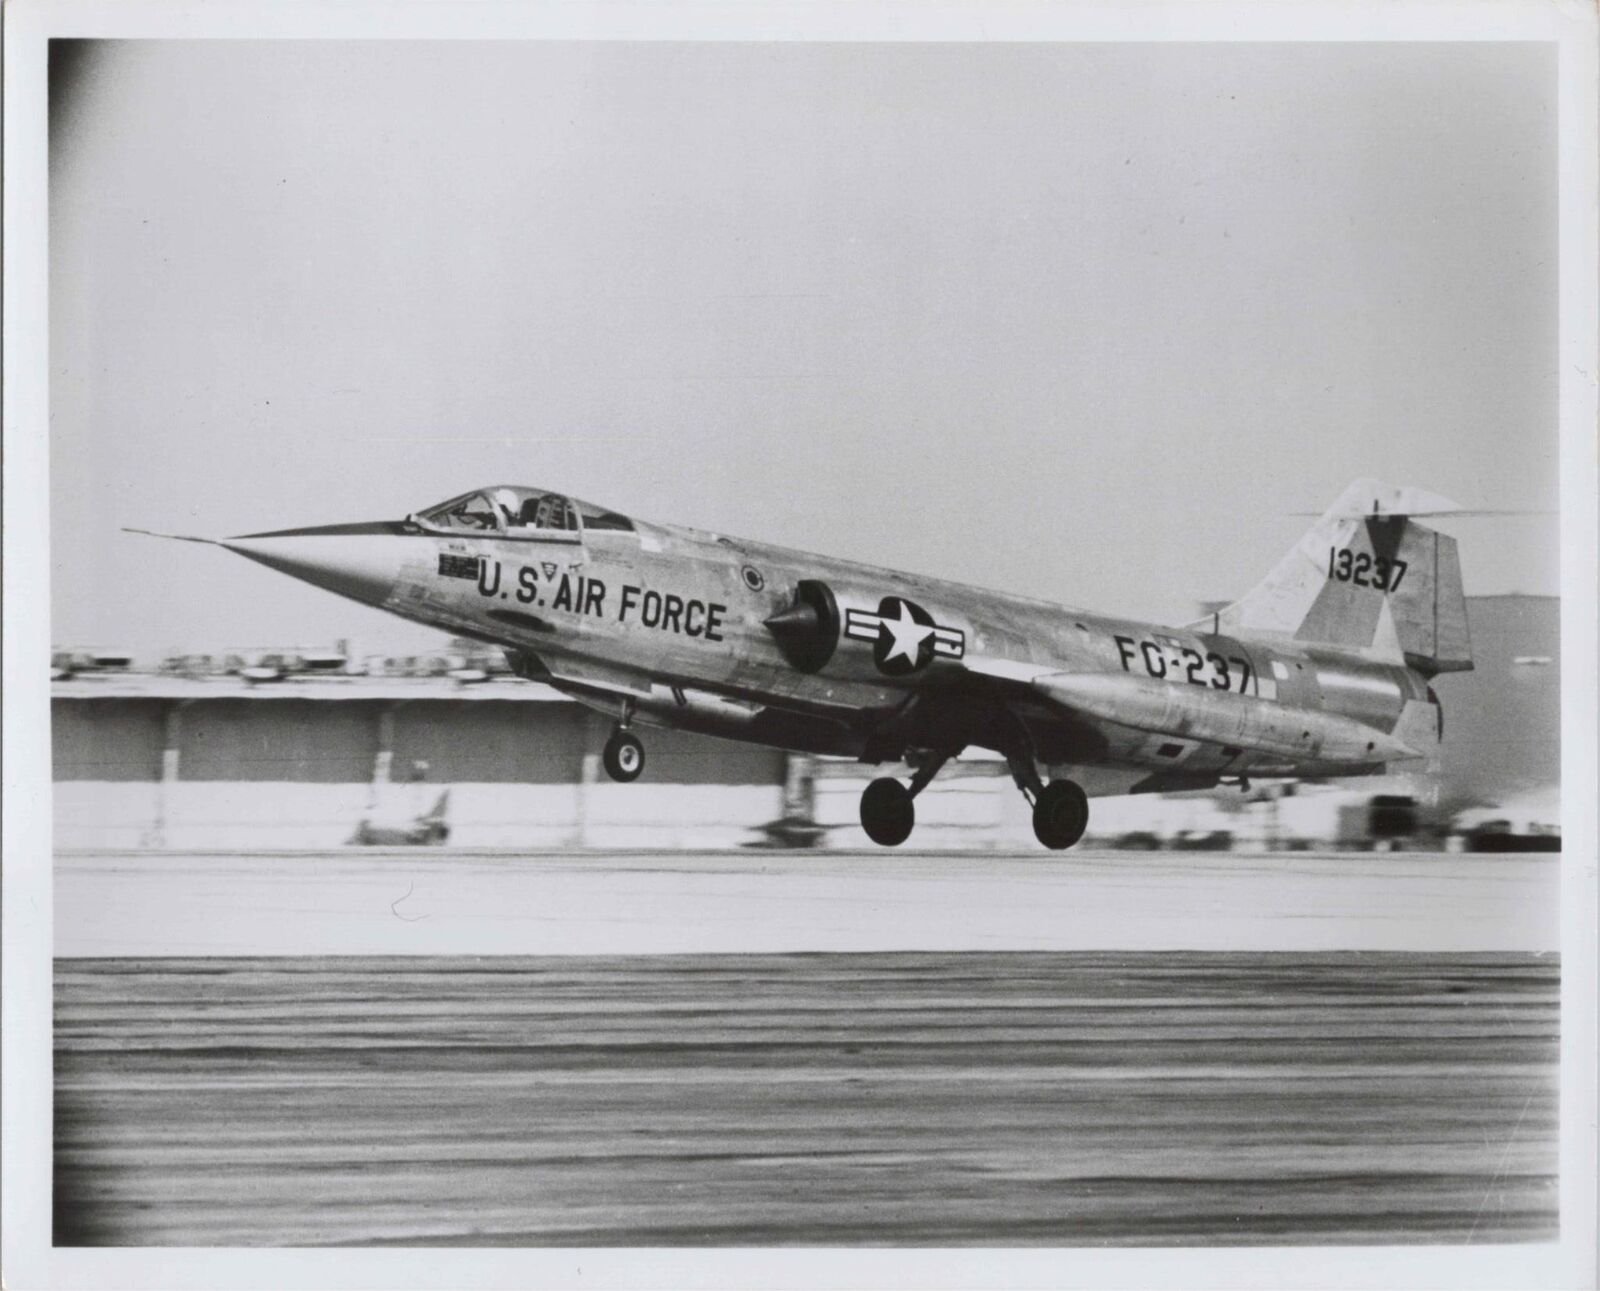 LOCKHEED F-104G STARFIGHTER USAF FG-237 ORIGINAL VINTAGE MANUFACTURERS PHOTO